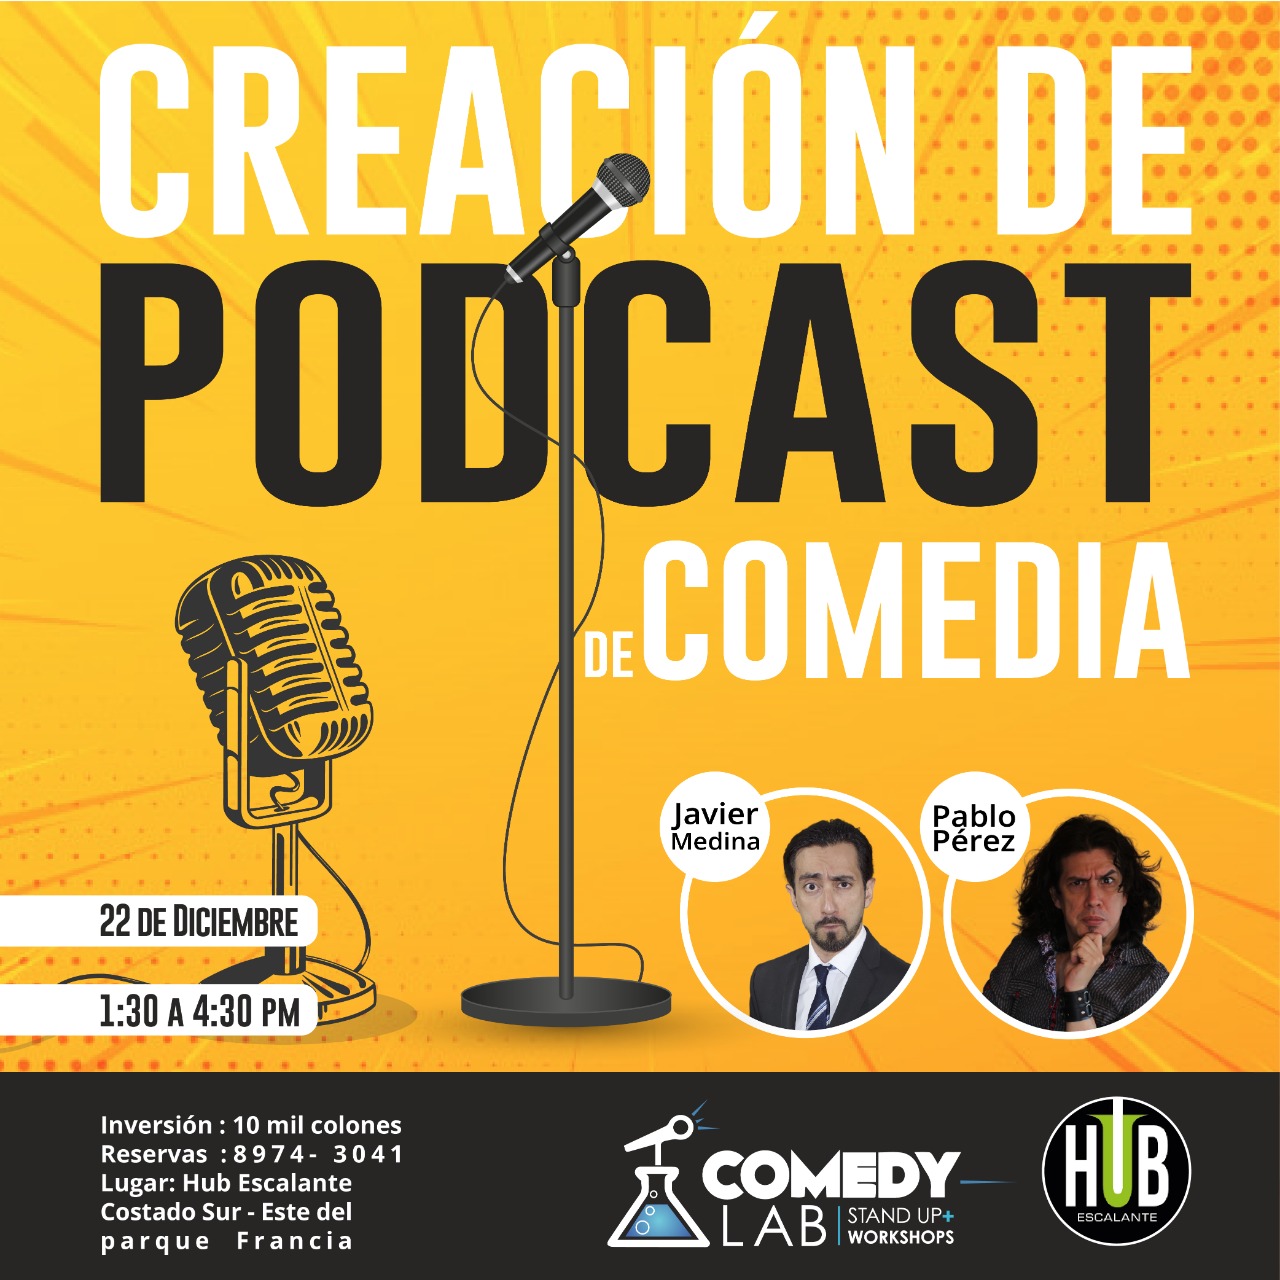 Taller De Podcasting Comedia con Javier Medina